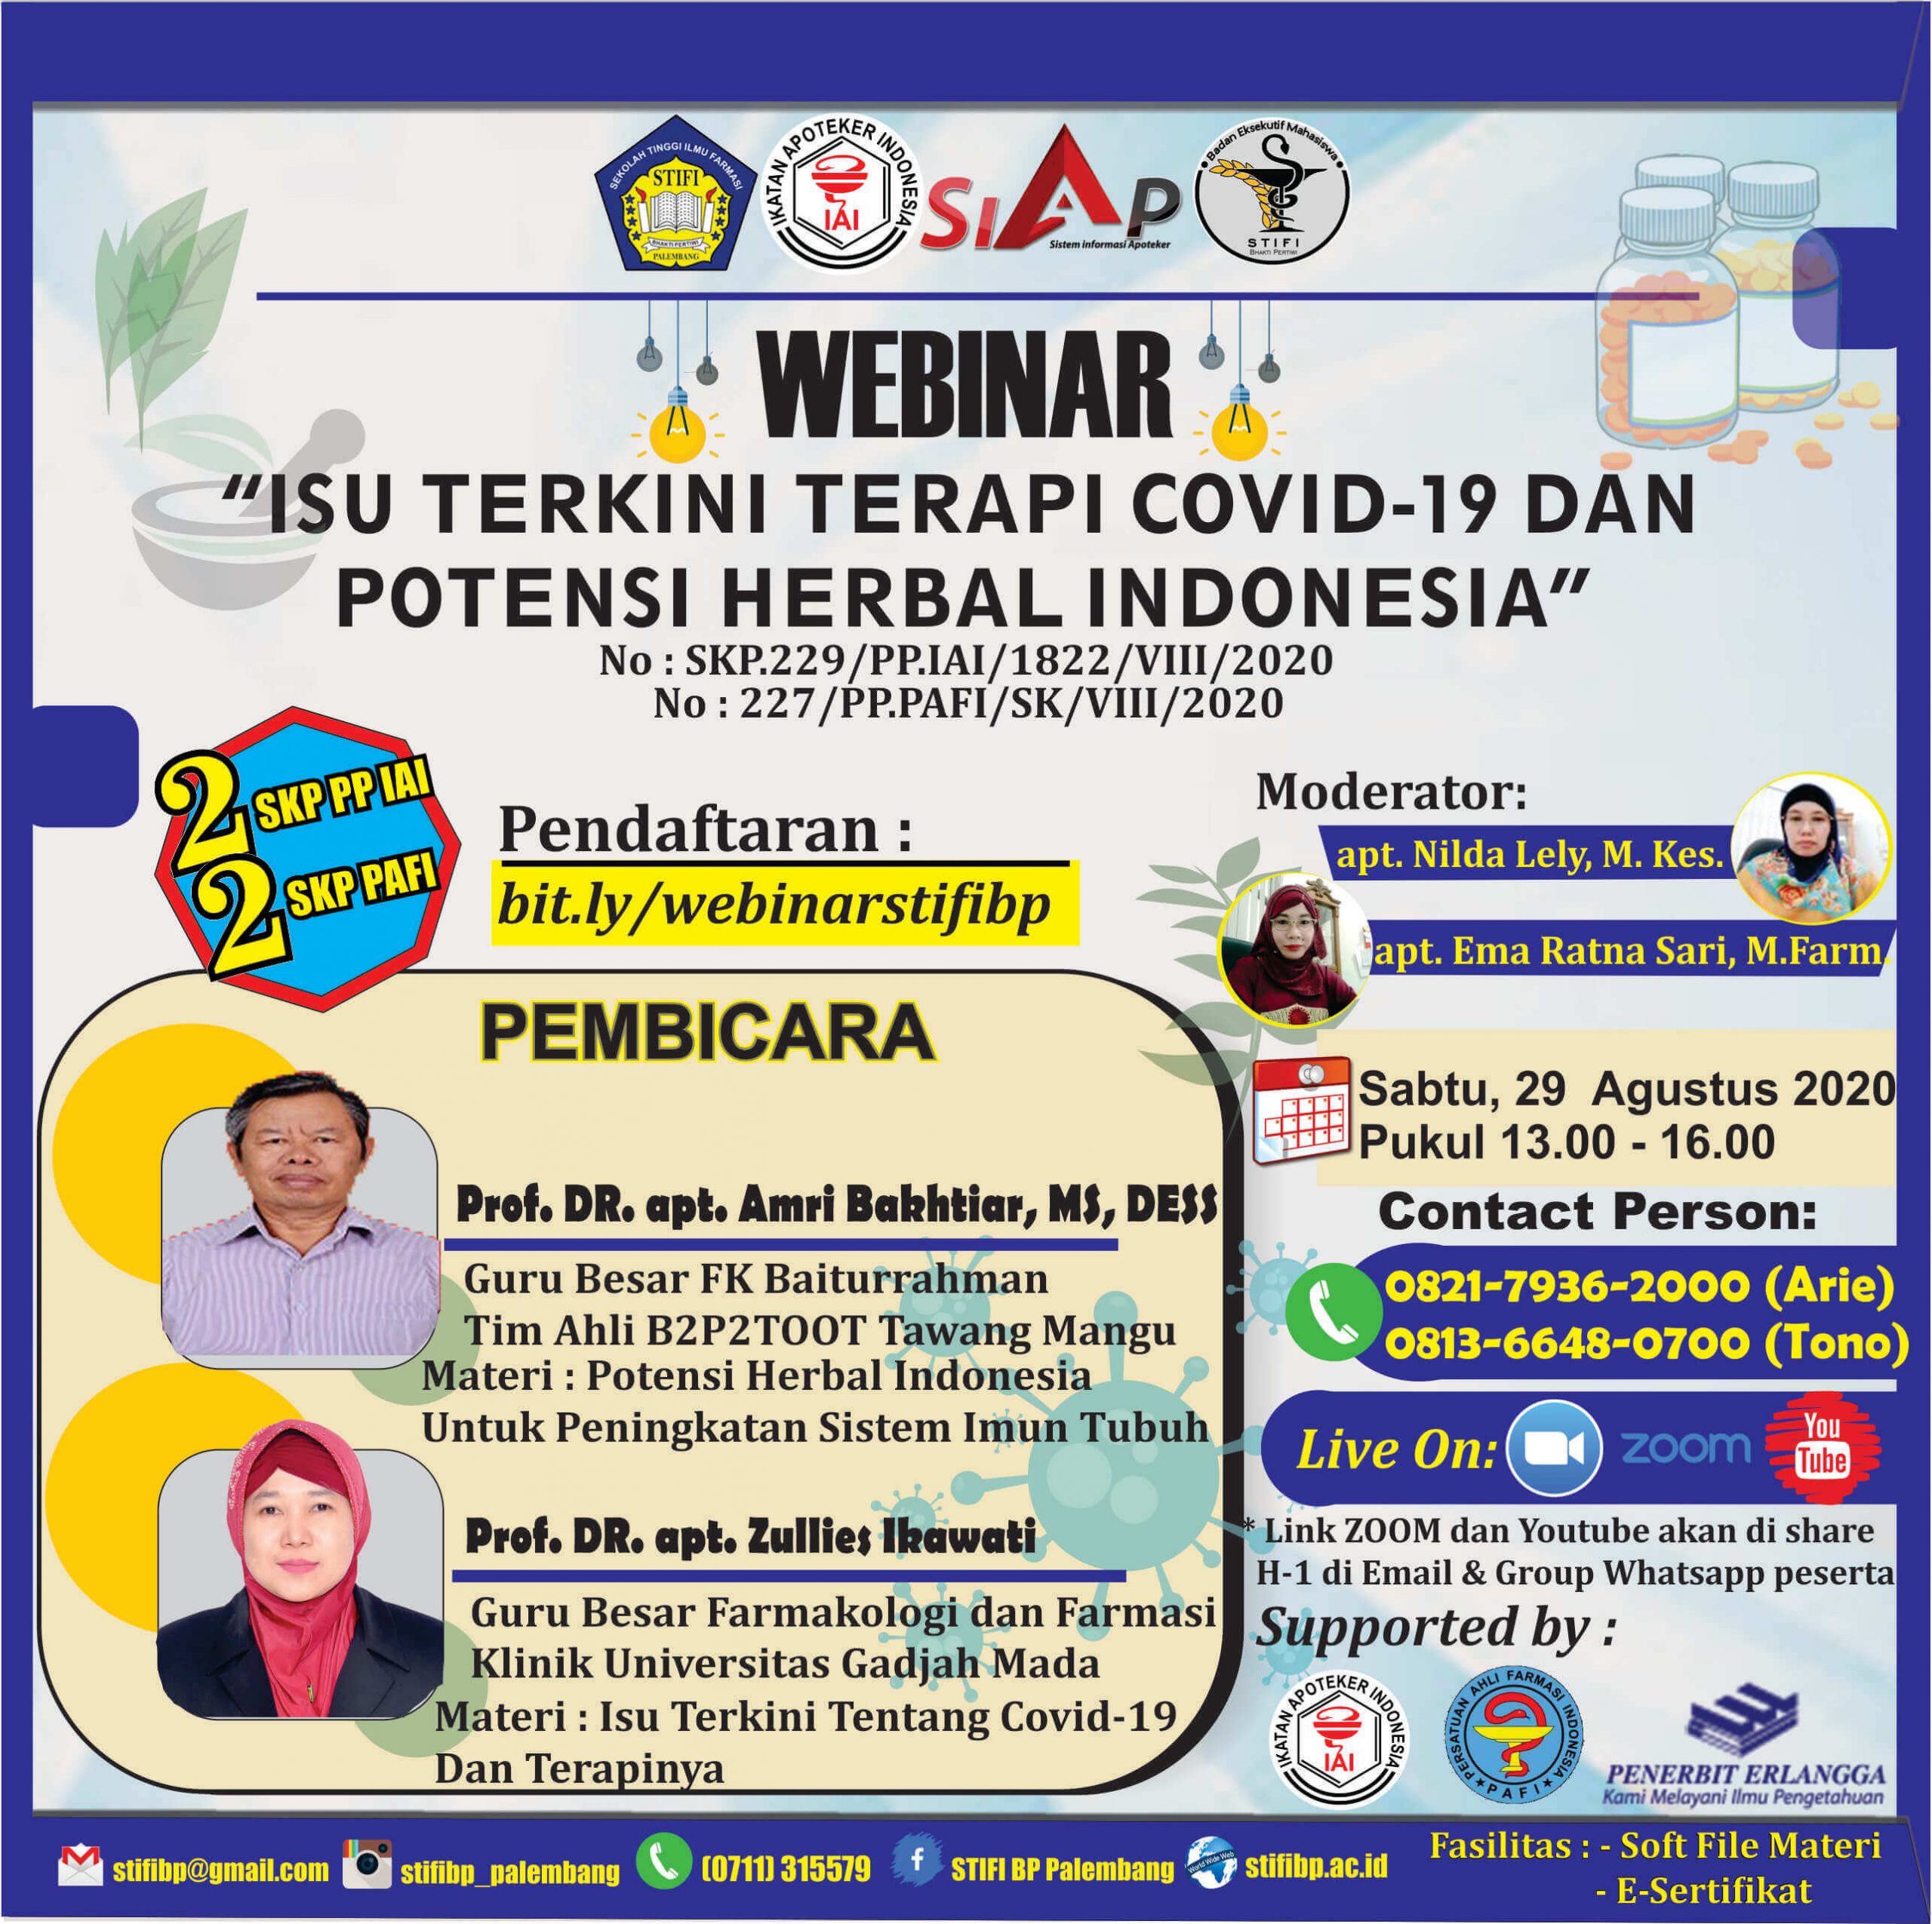 Webinar “Isu Terkini Terapi Covid-19 dan Potensi Herbal Indonesia”